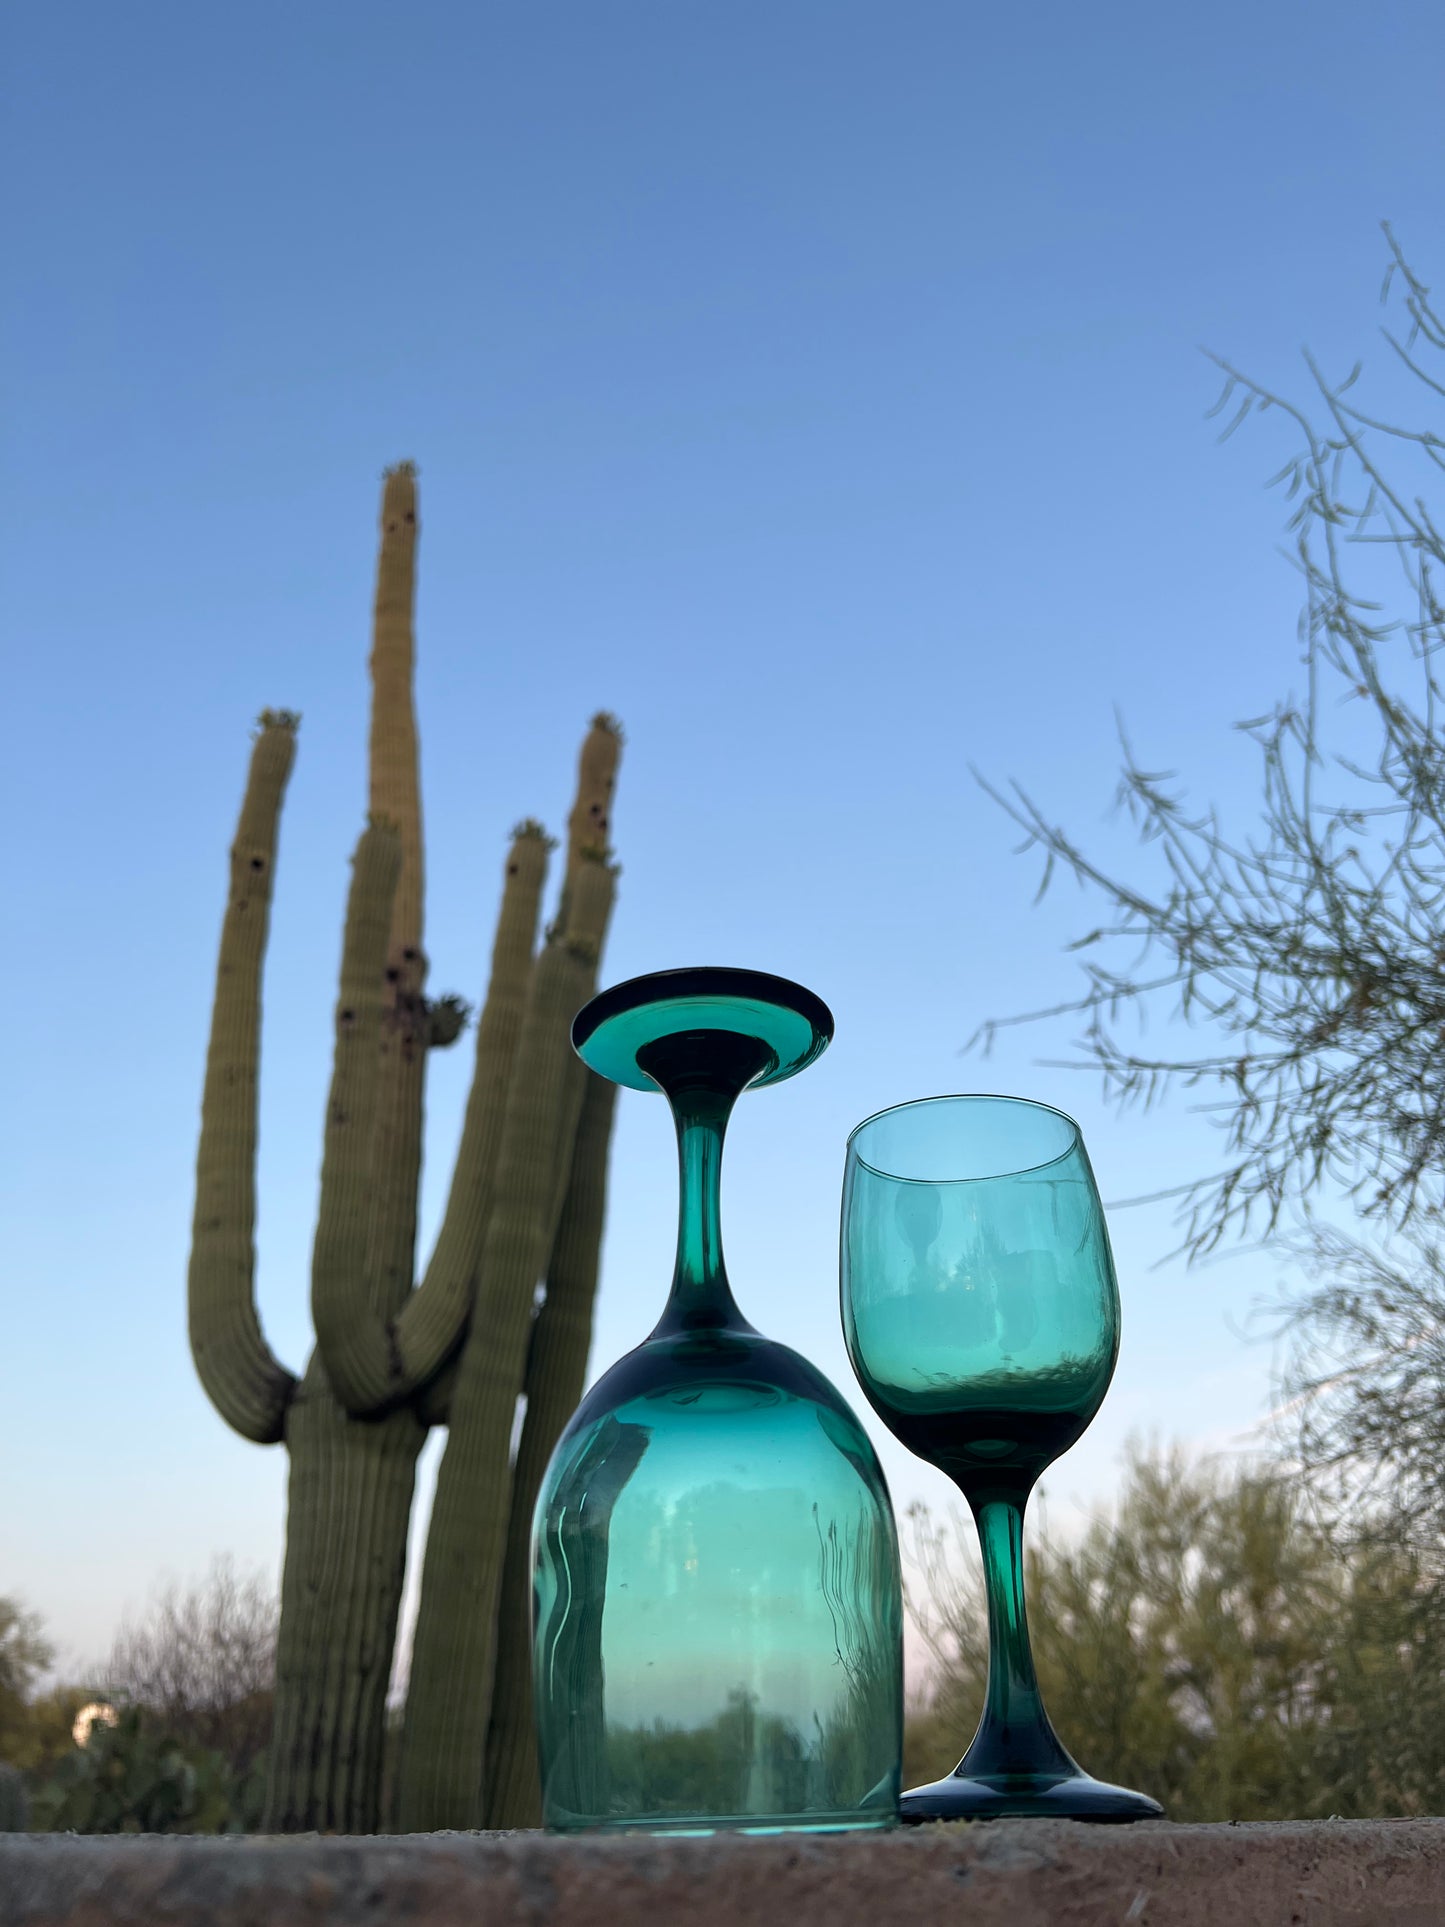 Lush Desert Wine Glasses